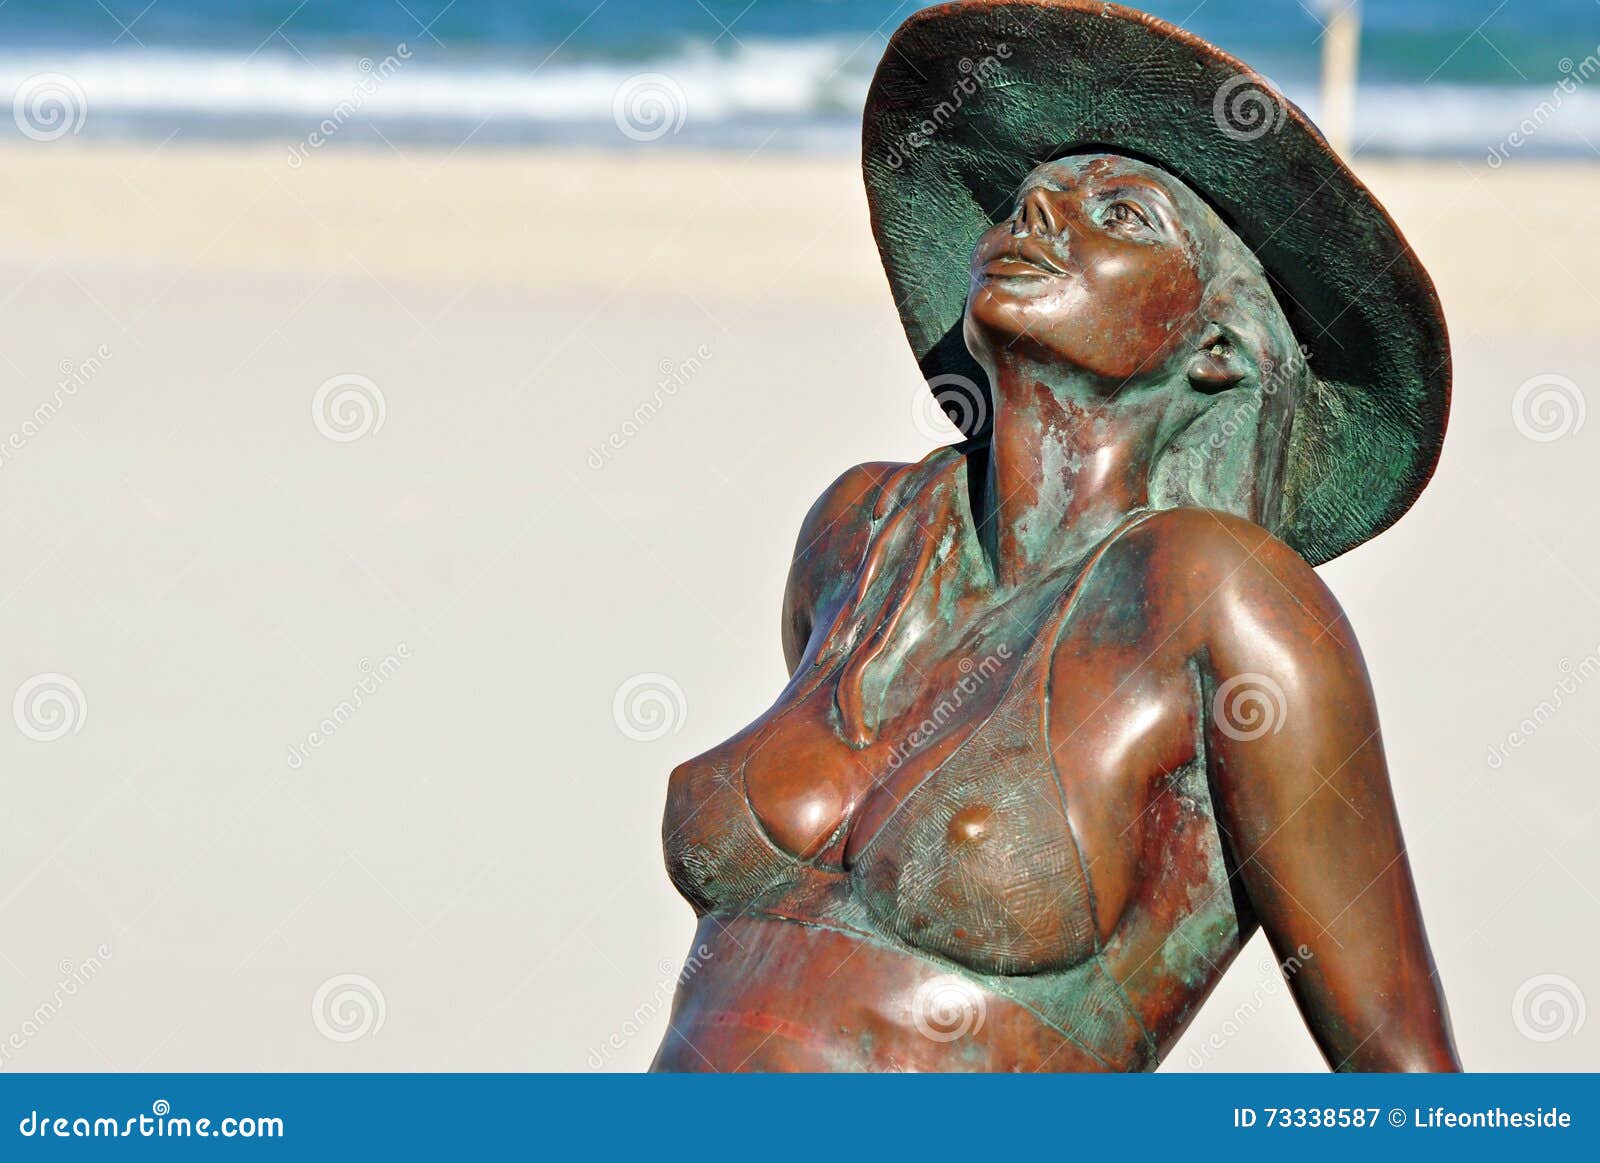 young nude girl sunbathers mmv wife